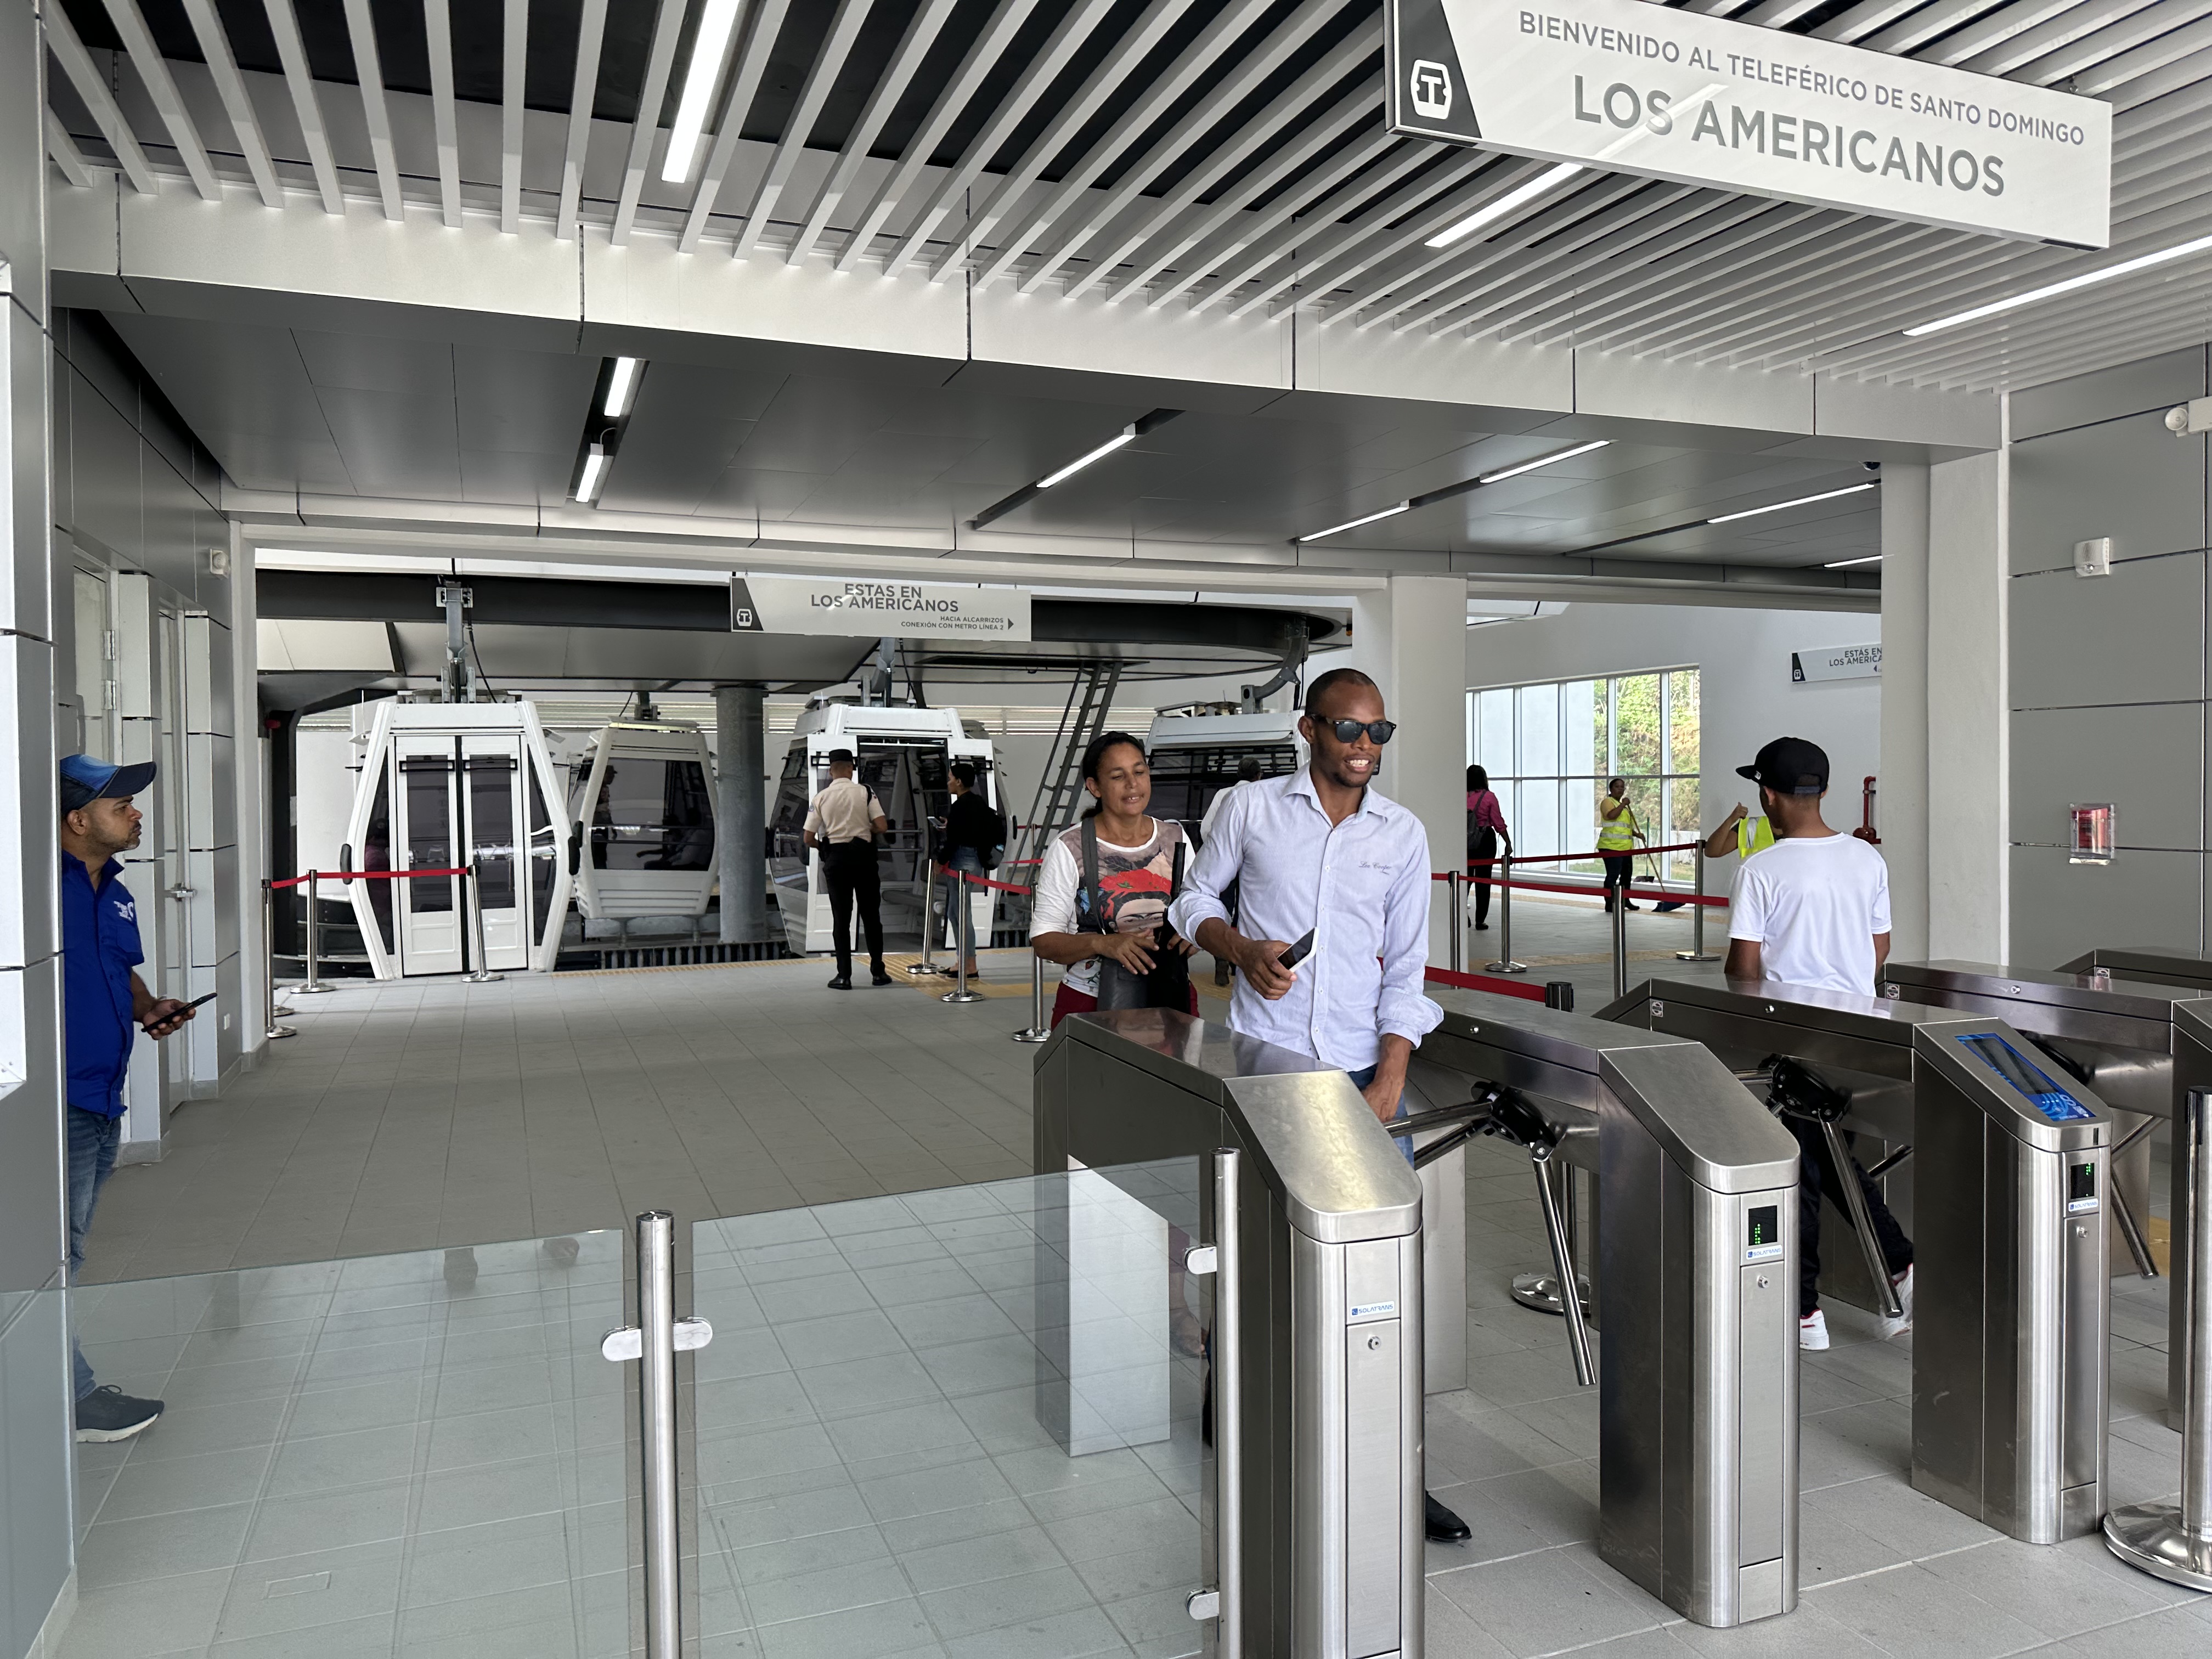 REPÚBLICA DOMINICANA: Usuarios afirman teleférico Los Alcarrizos mejora el tráfico, además de ahorrar tiempo y costo de desplazamiento